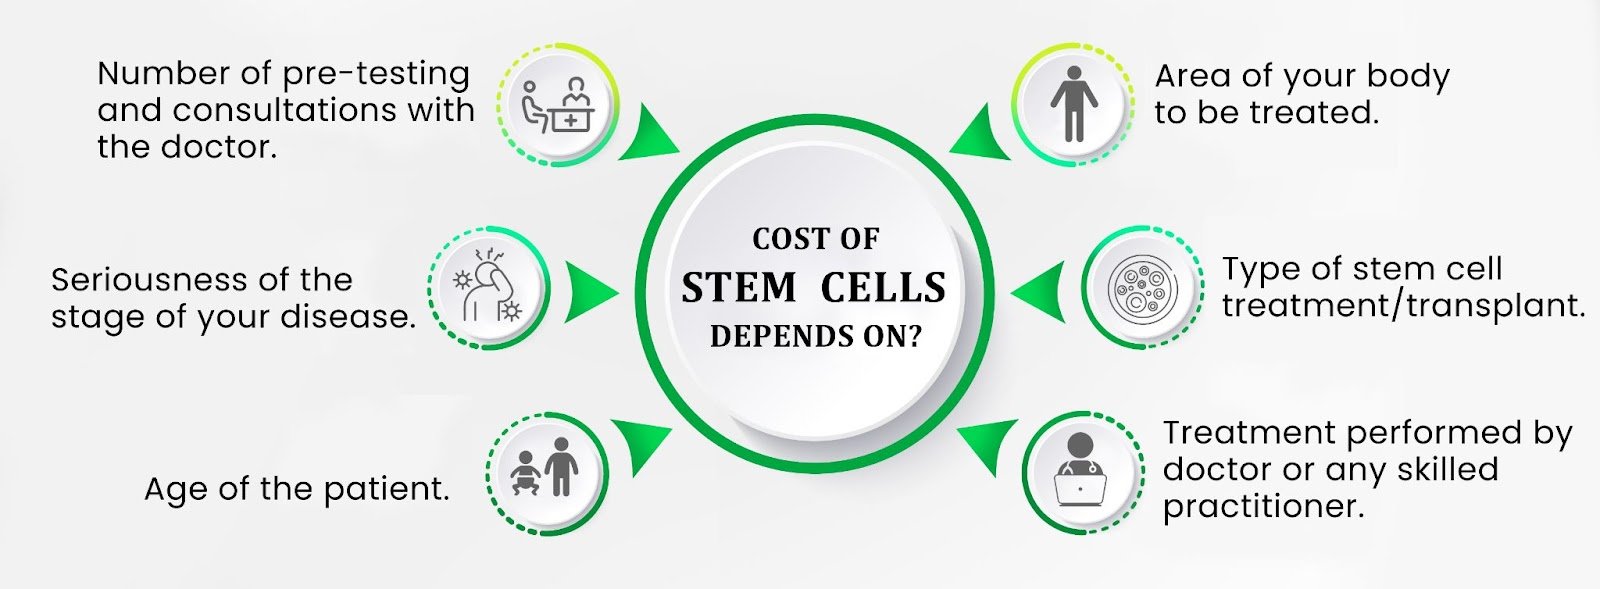 العوامل المؤثرة في تكلفة العلاج بالخلايا الجذعية